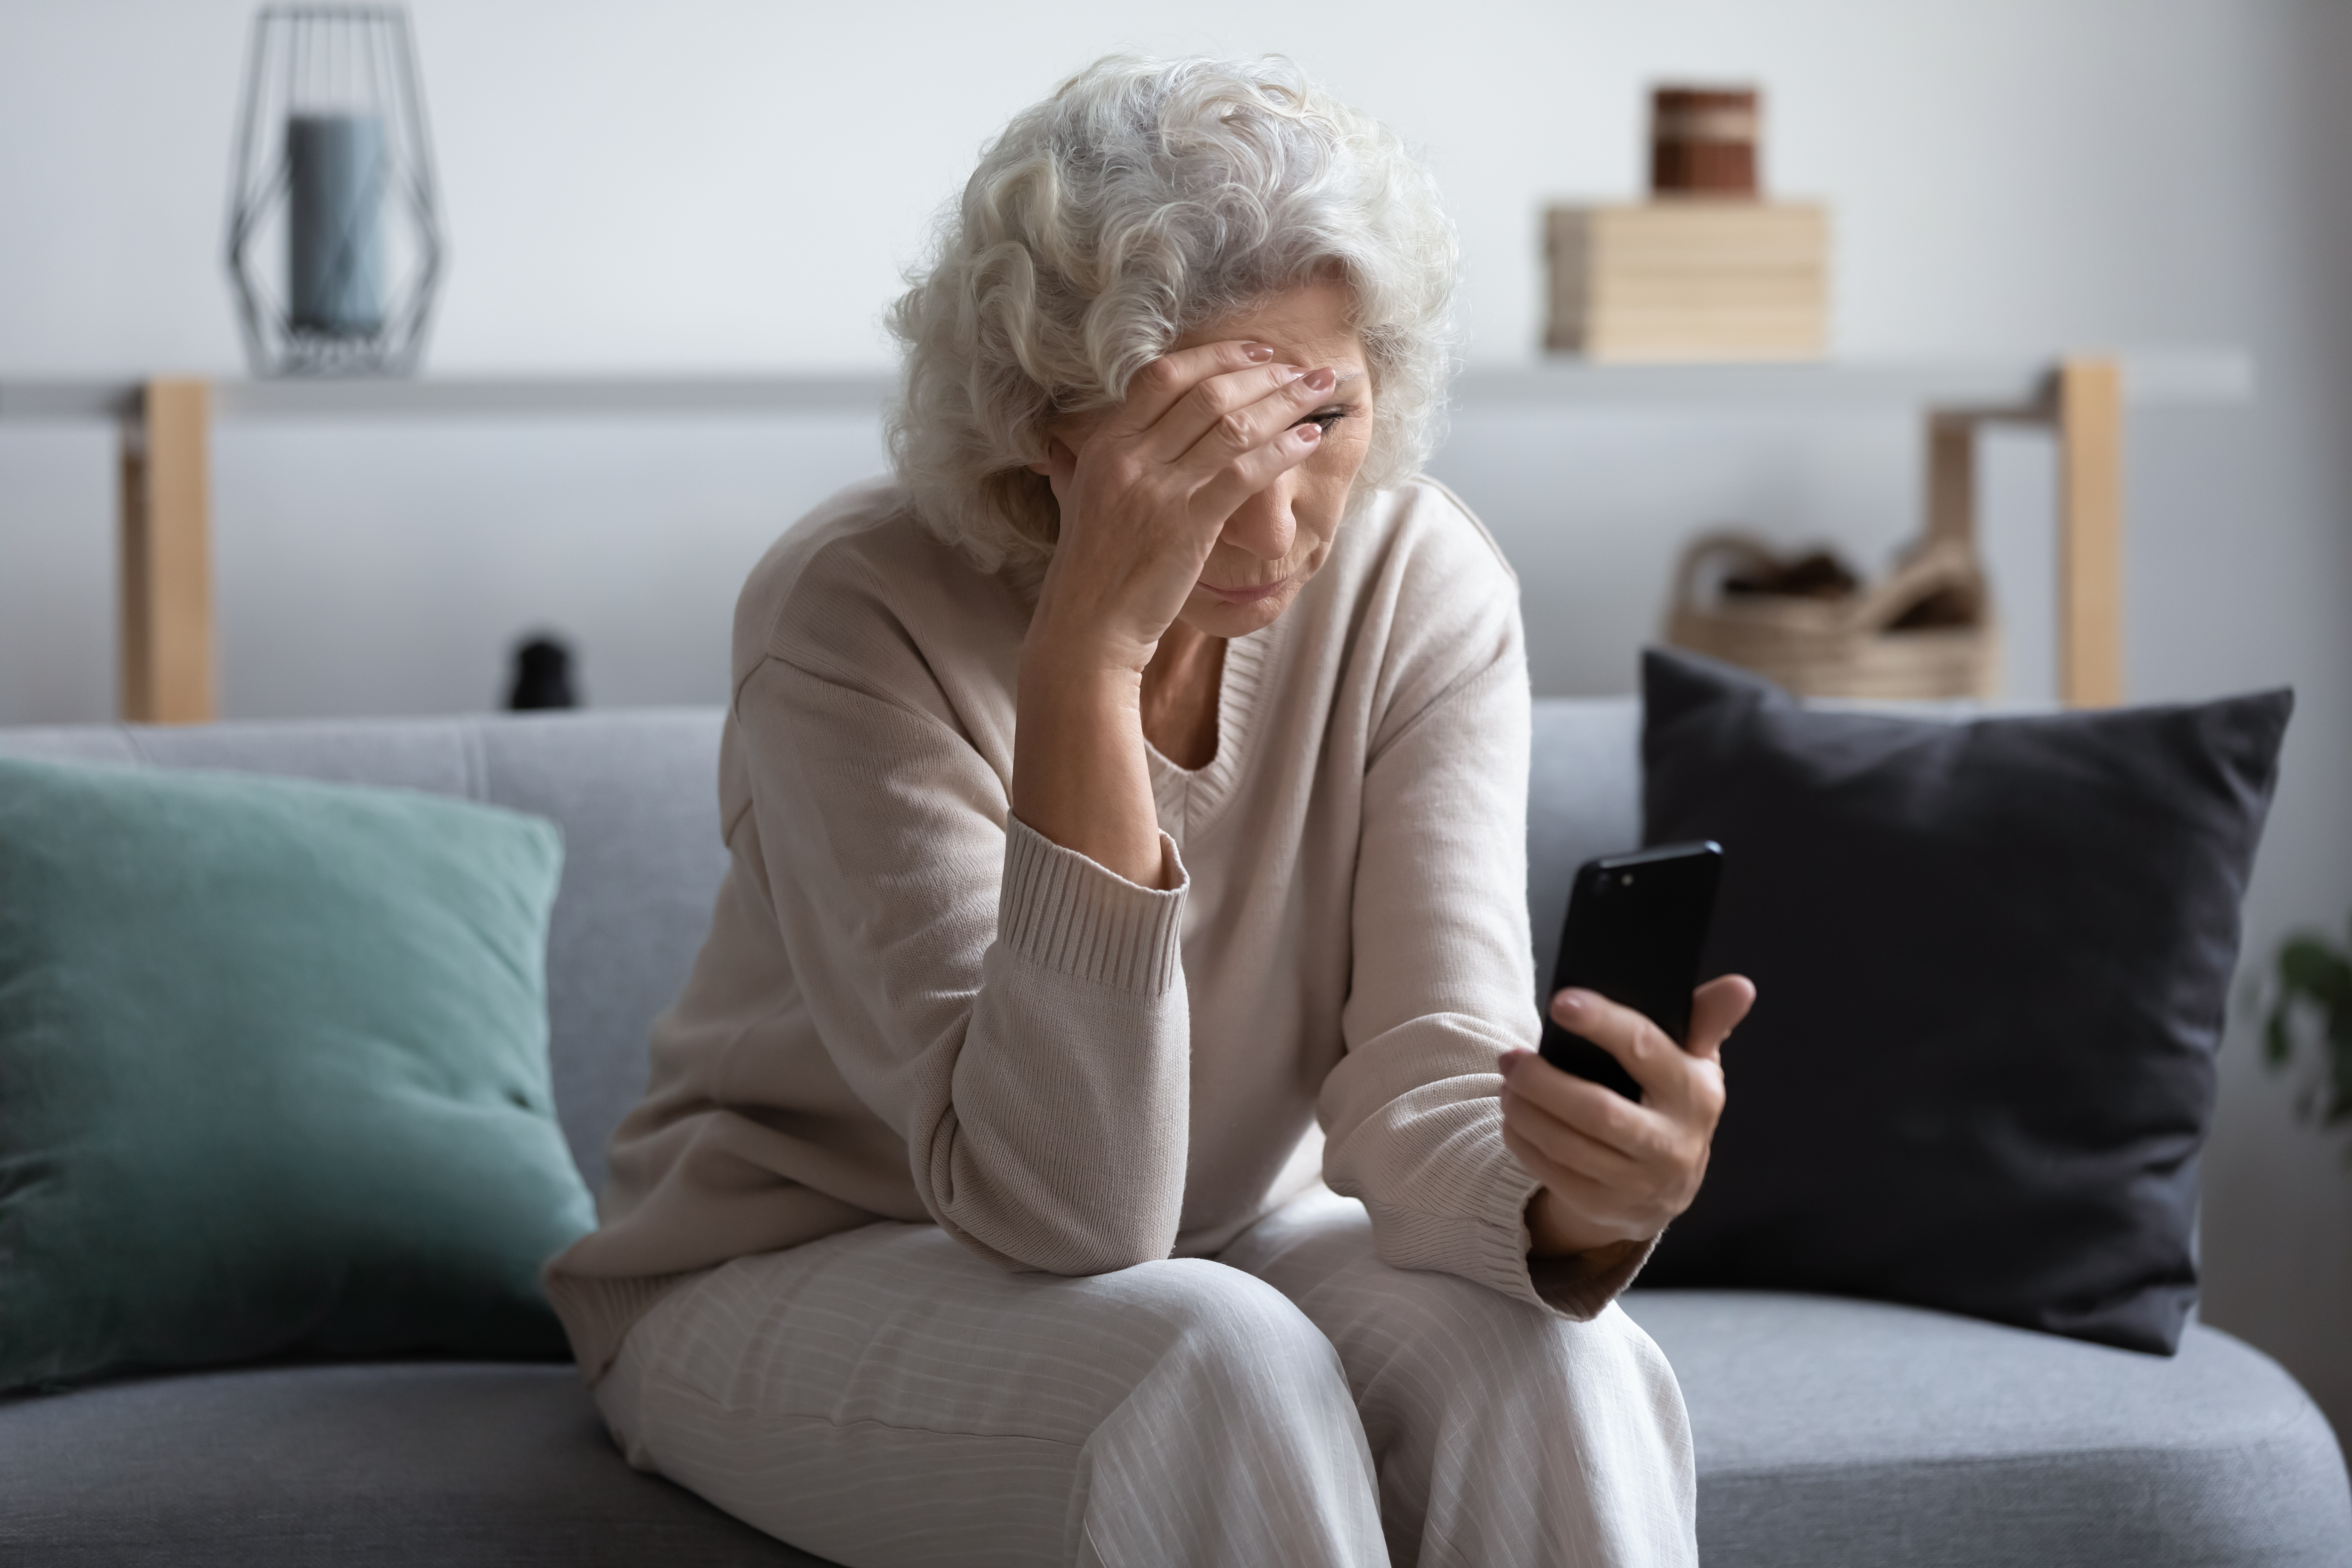 Une femme stressée alors qu'elle est au téléphone | Source : Shutterstock